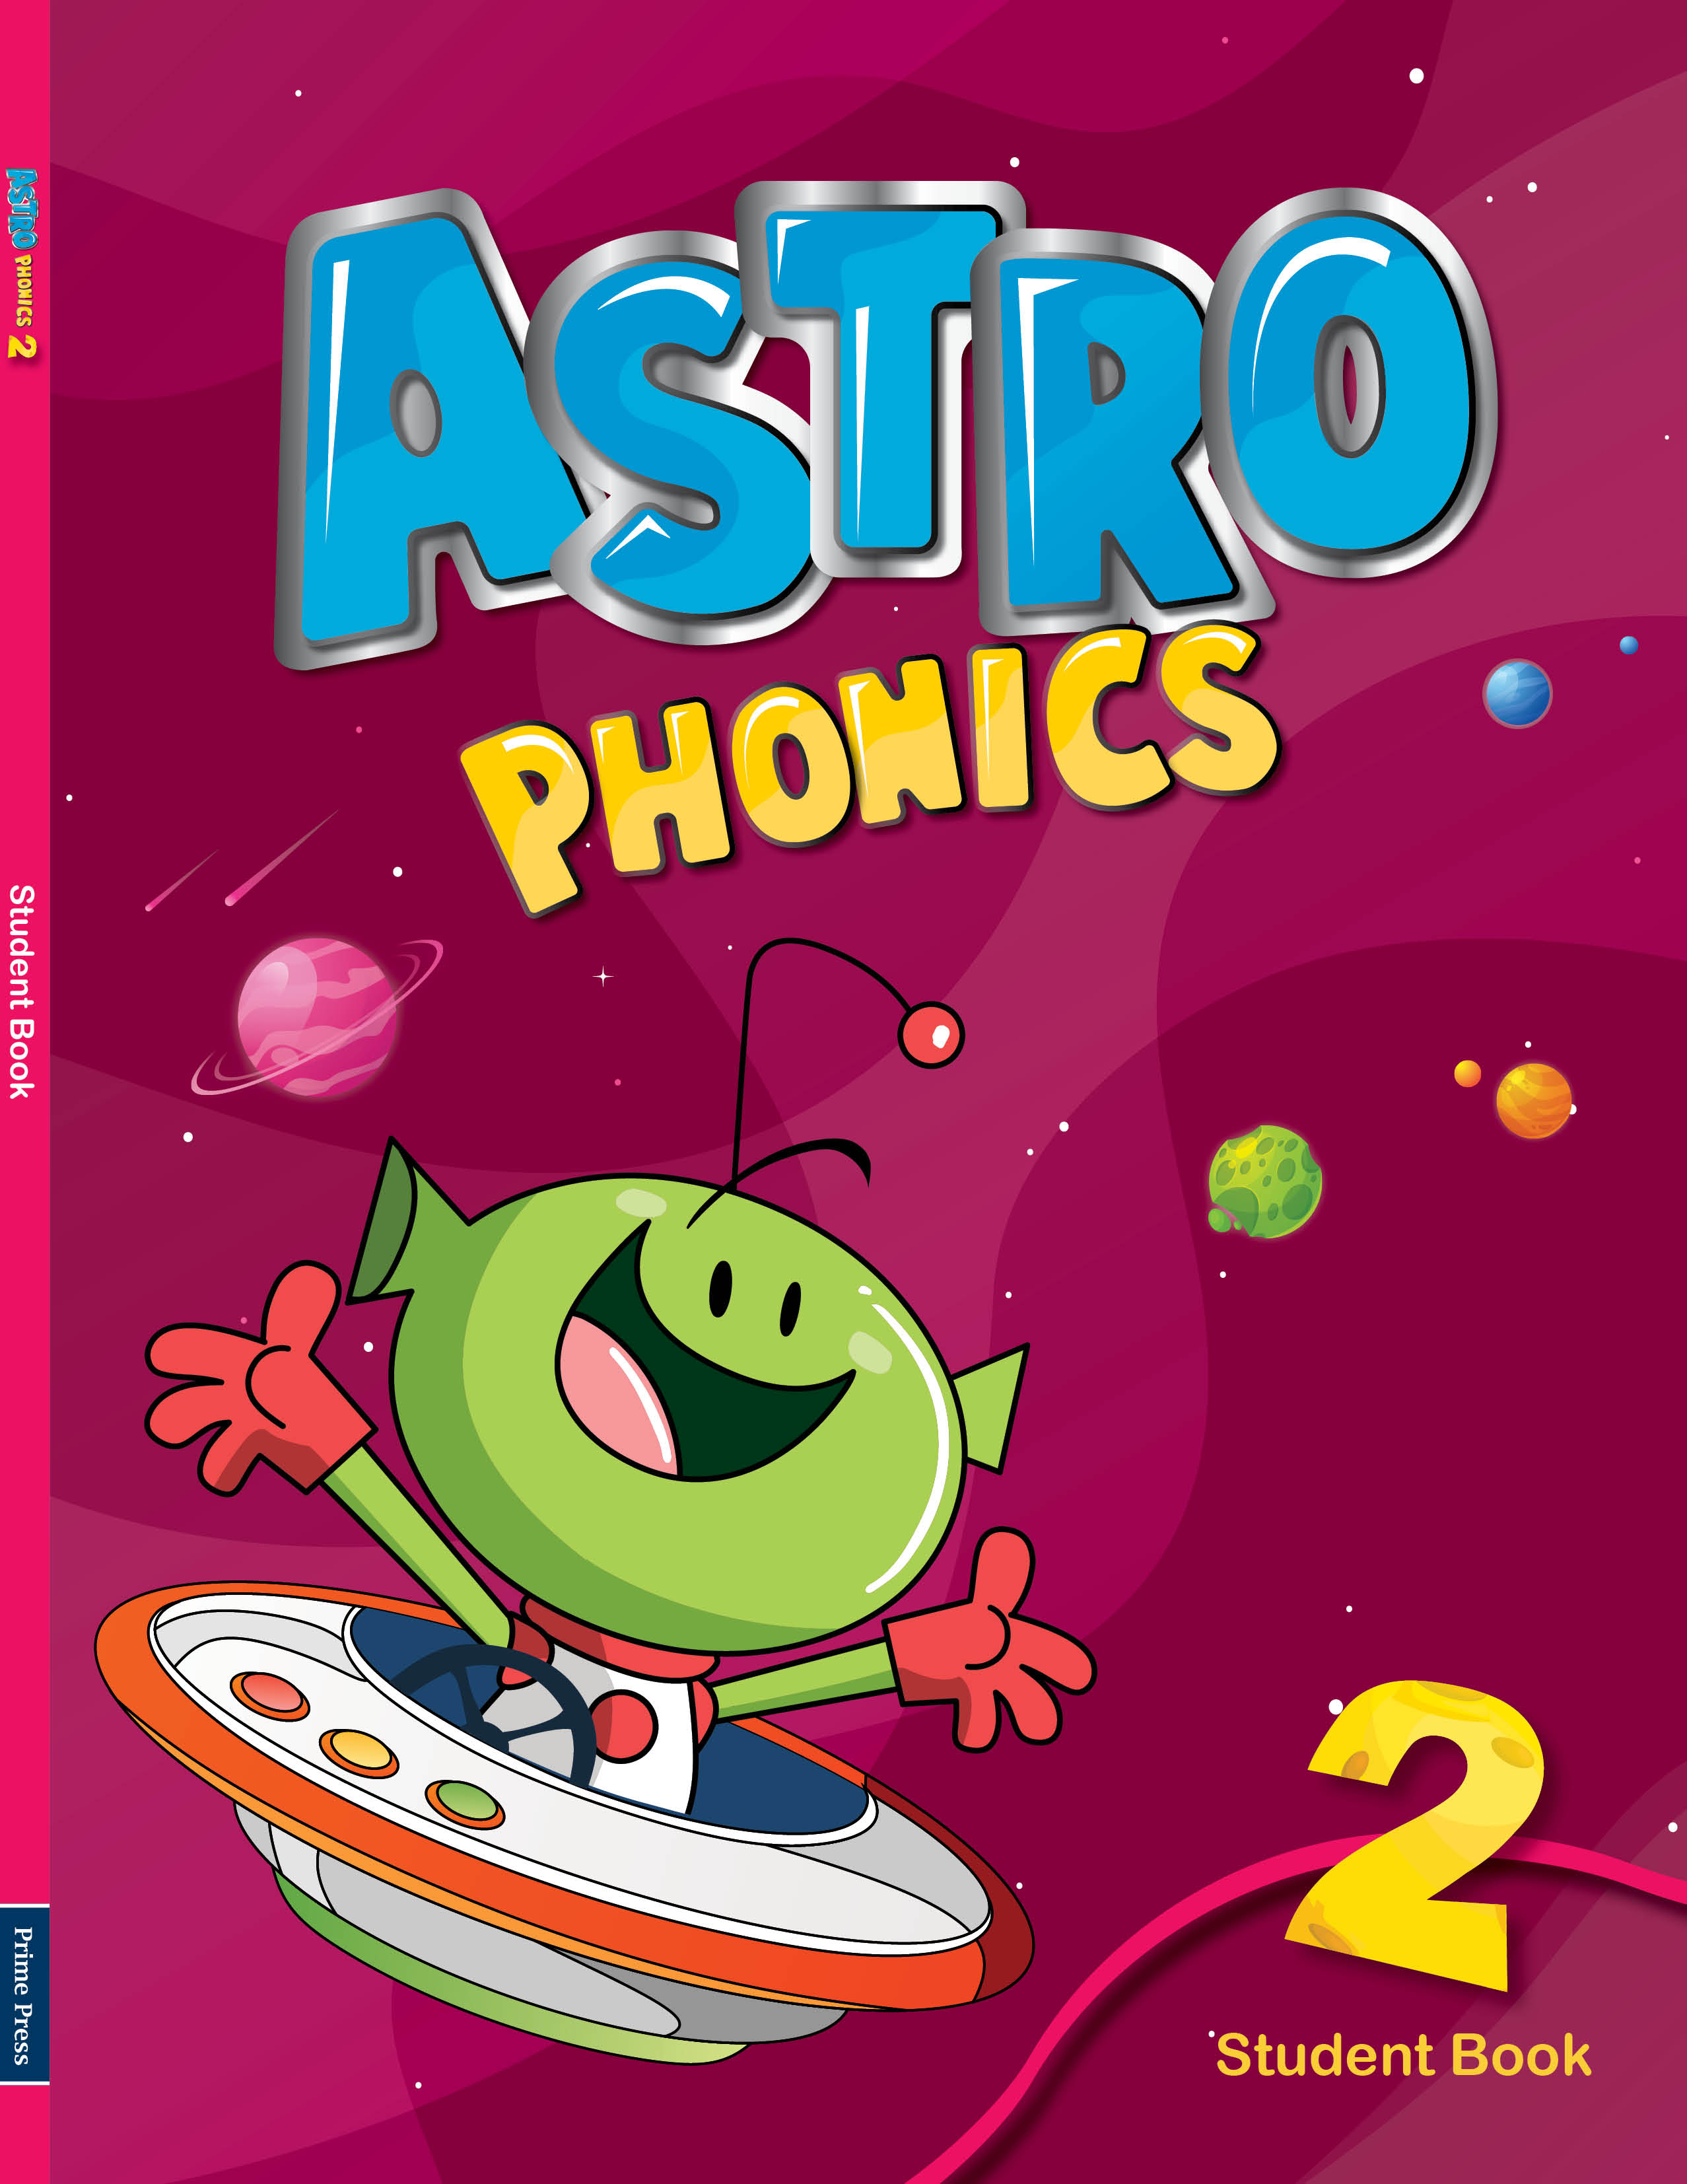 Astro Phonics 2